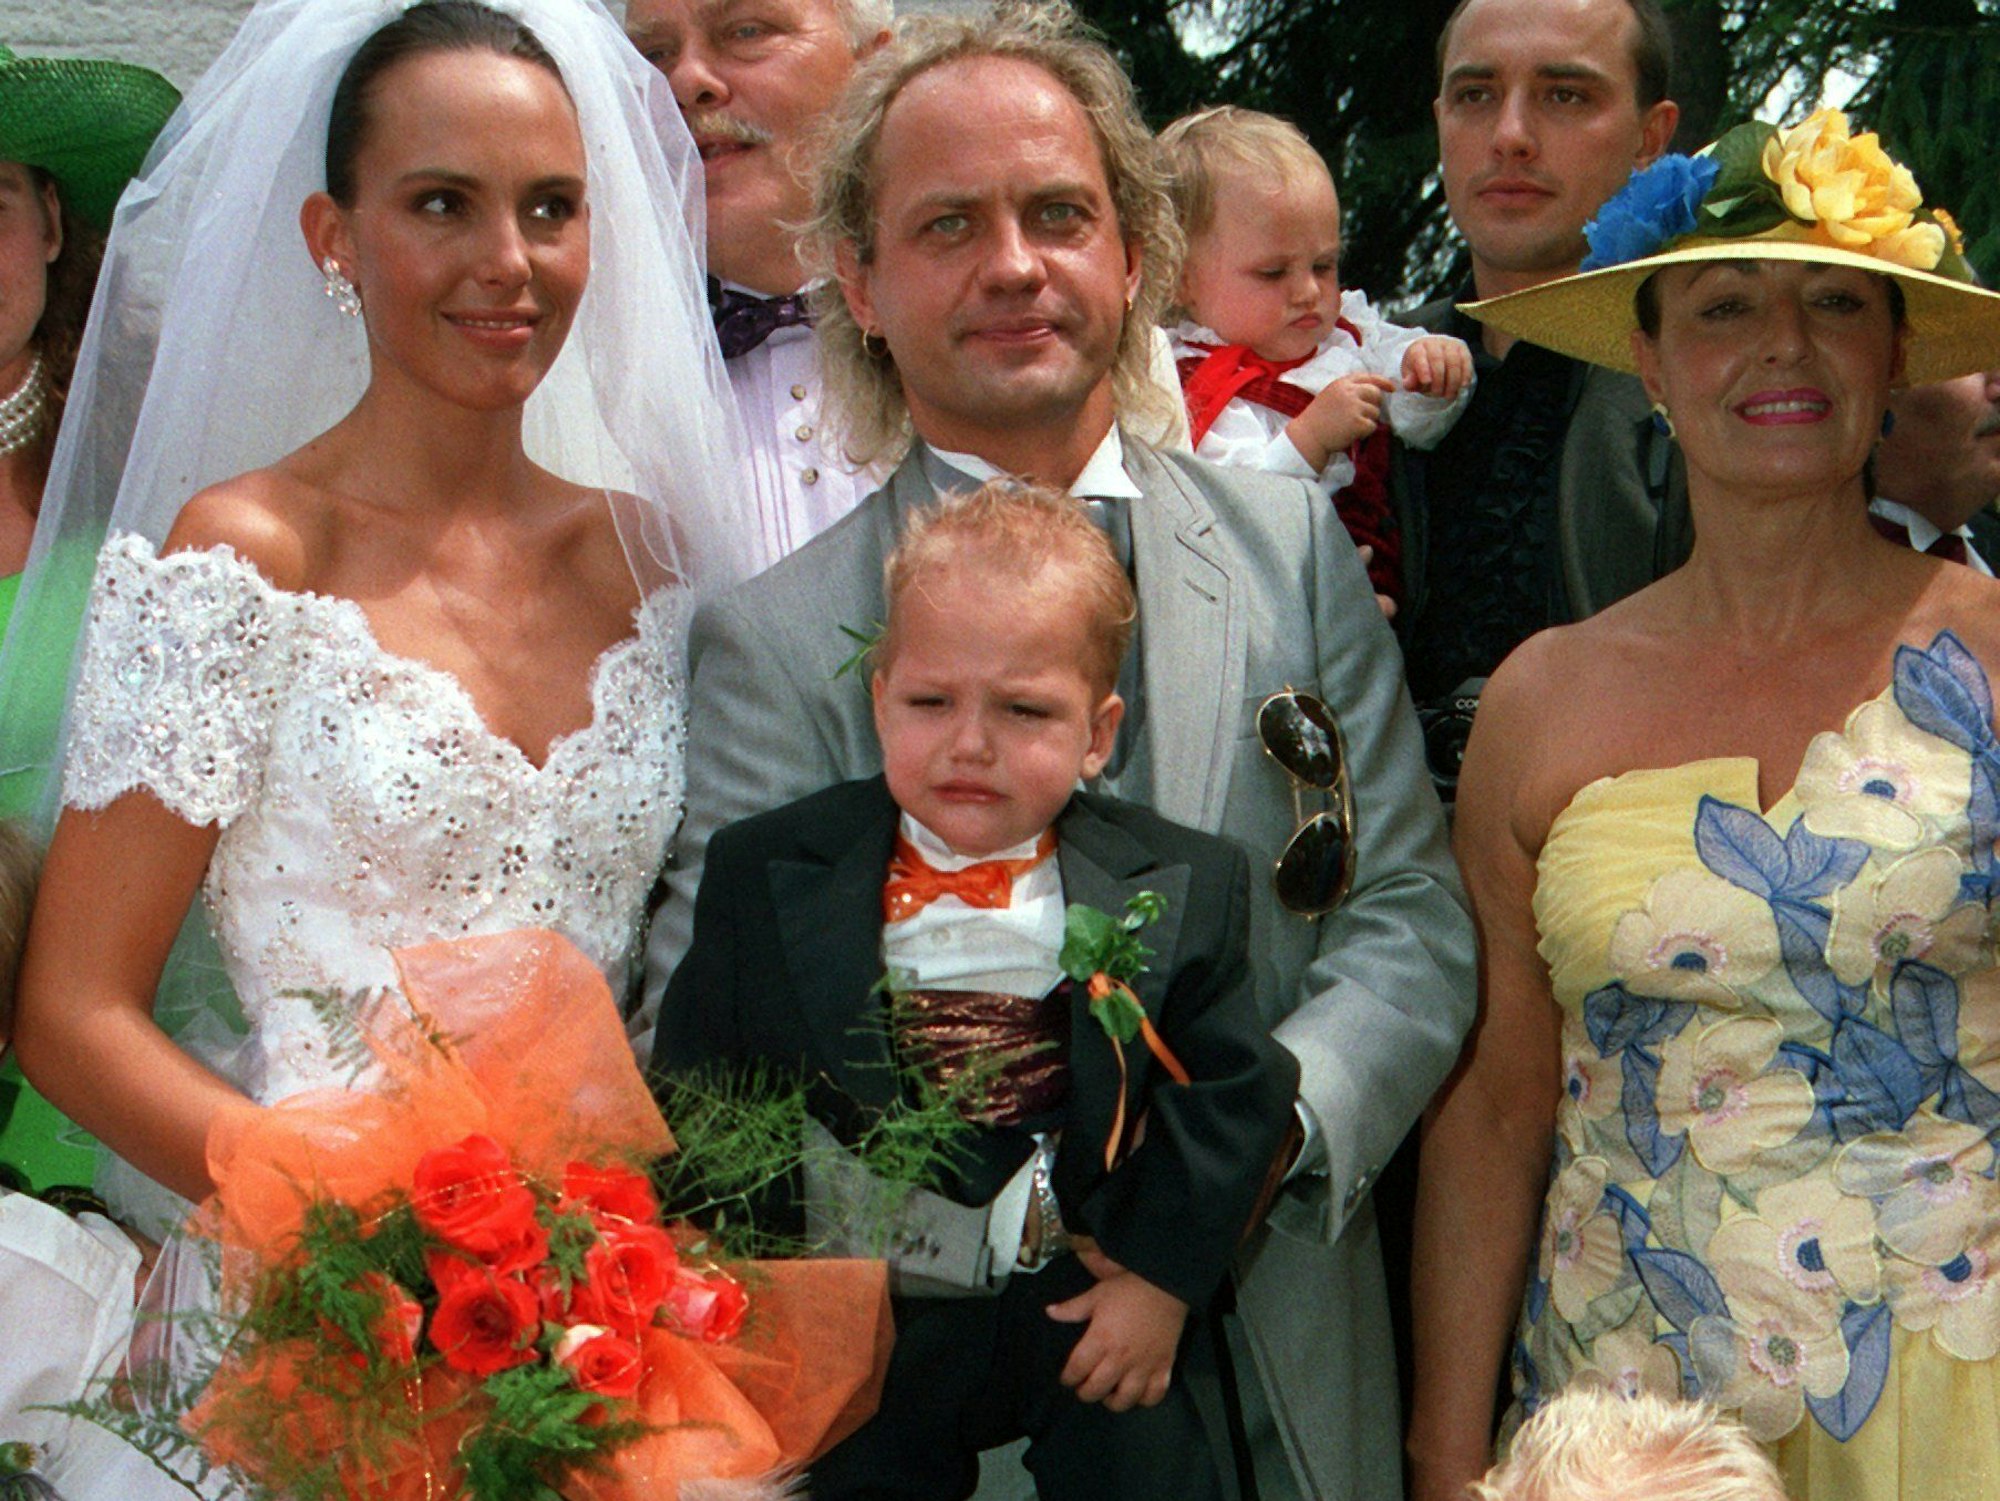 Der deutsche Schauspieler Uwe Ochsenknecht und seine Ehefrau Natascha, aufgenommen bei der Trauung am 10.7.1993 in München.